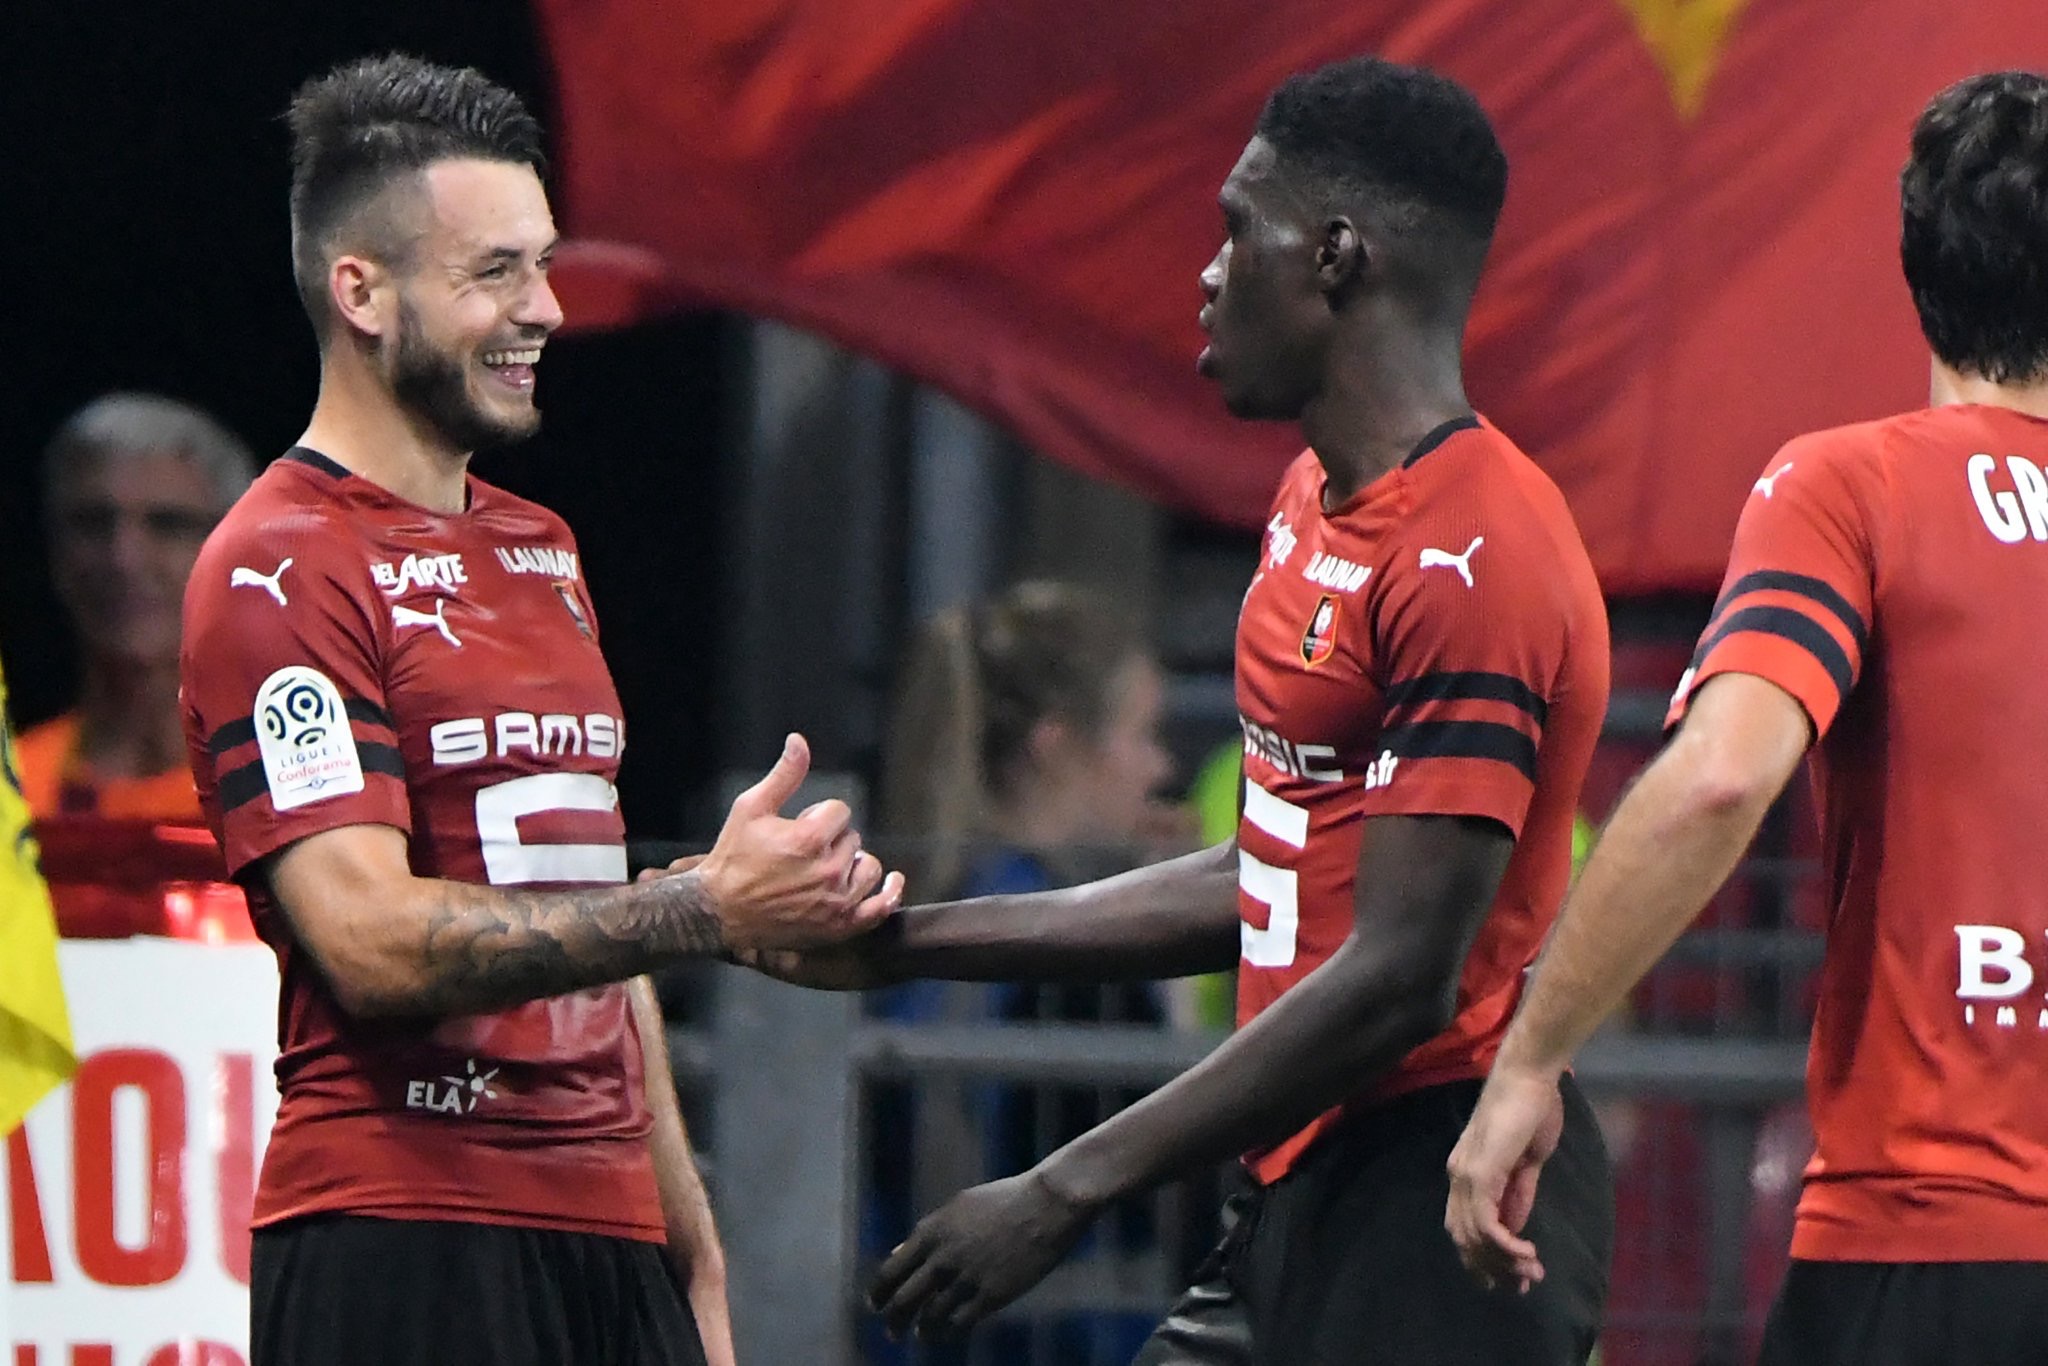 Ismaila Sarr permet à Rennes de mener 2-0 avec un but et un penalty provoqué